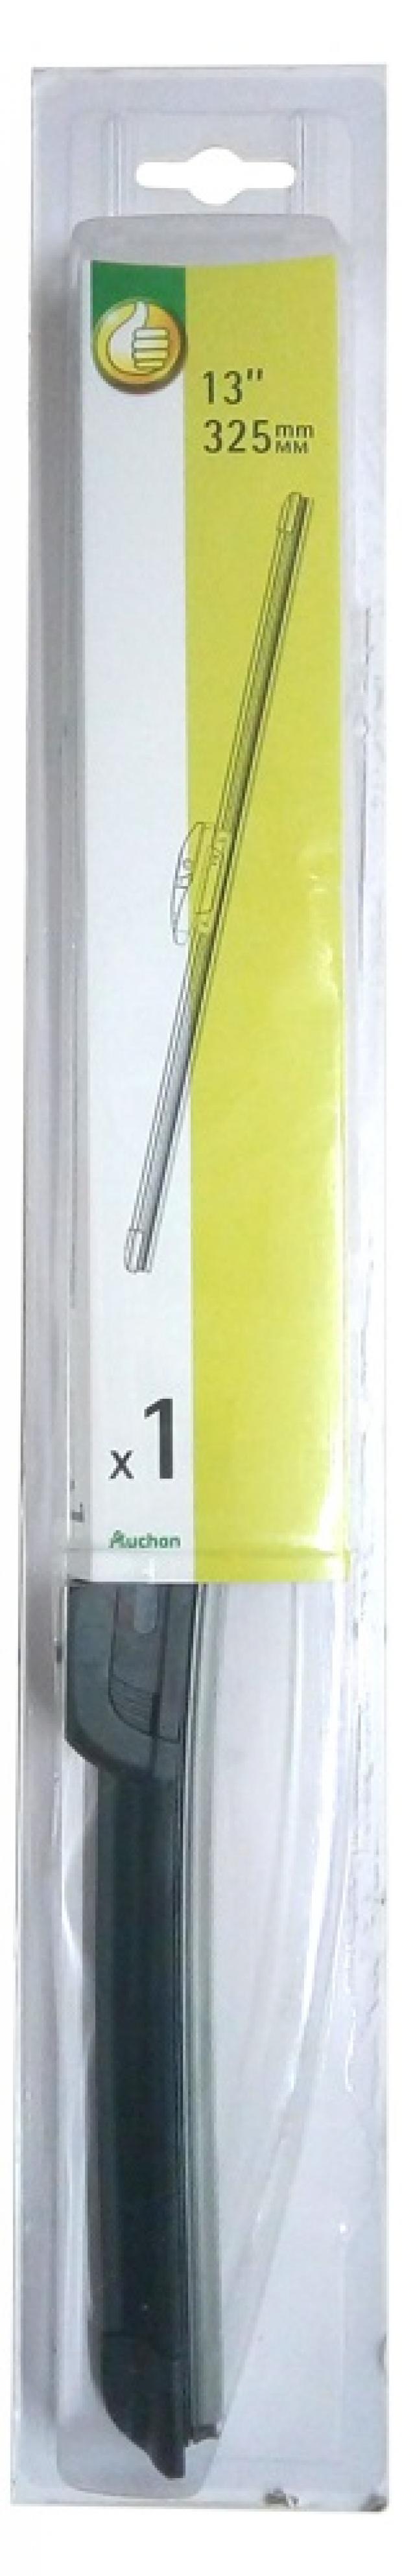 Щетка стеклоочистителя АШАН бескаркасная, 325 мм щетка стеклоочистителя ашан бескаркасная 475 мм